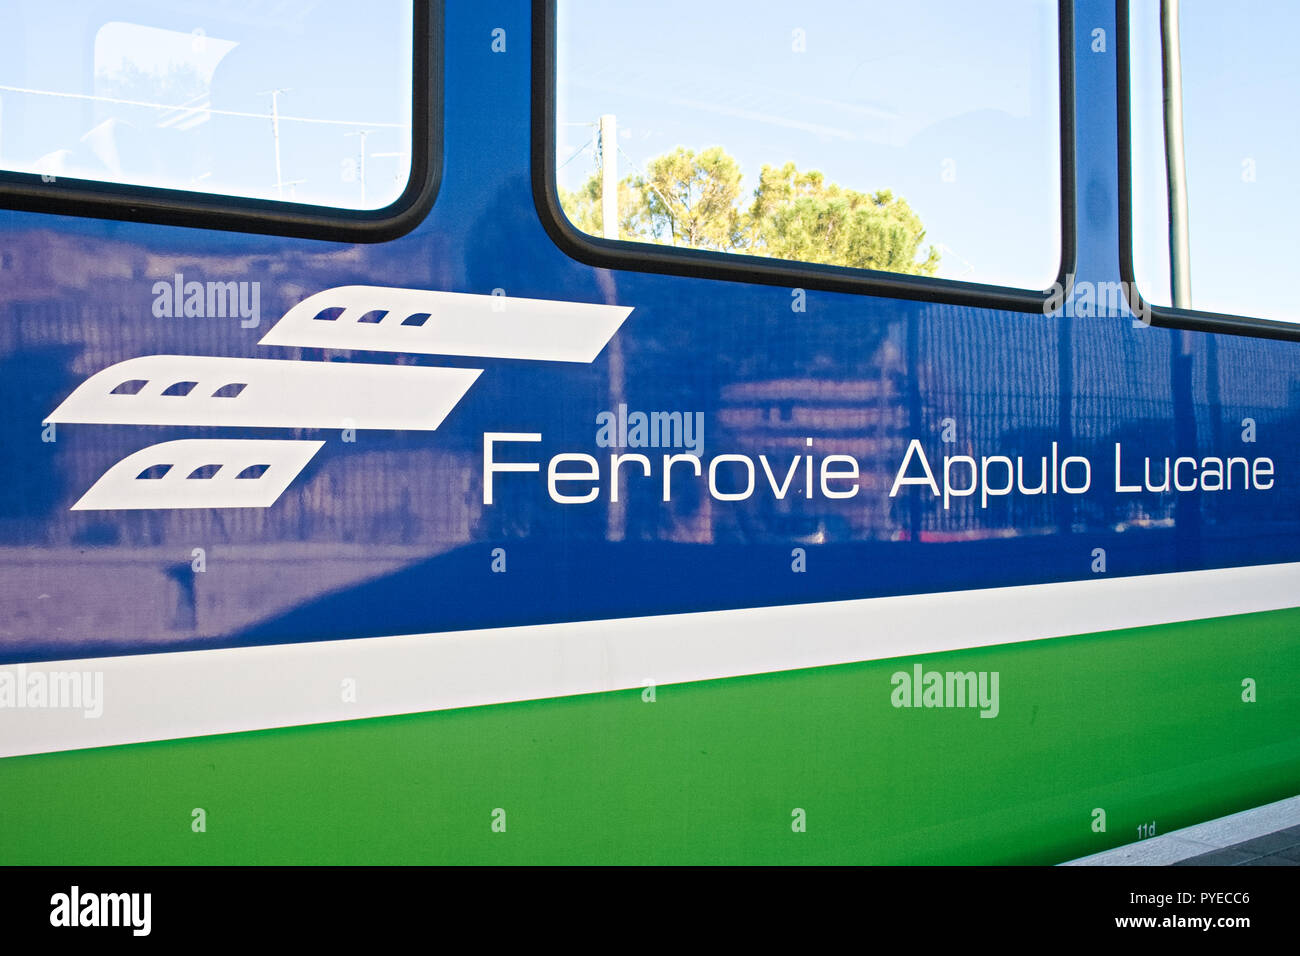 FAL, Ferrovie Appulo Lucane, italienischen Eisenbahnnetz, Züge verbinden Bari, Apulien Matera, Basilikata, über Altamura, Gravina und den Park von M Stockfoto